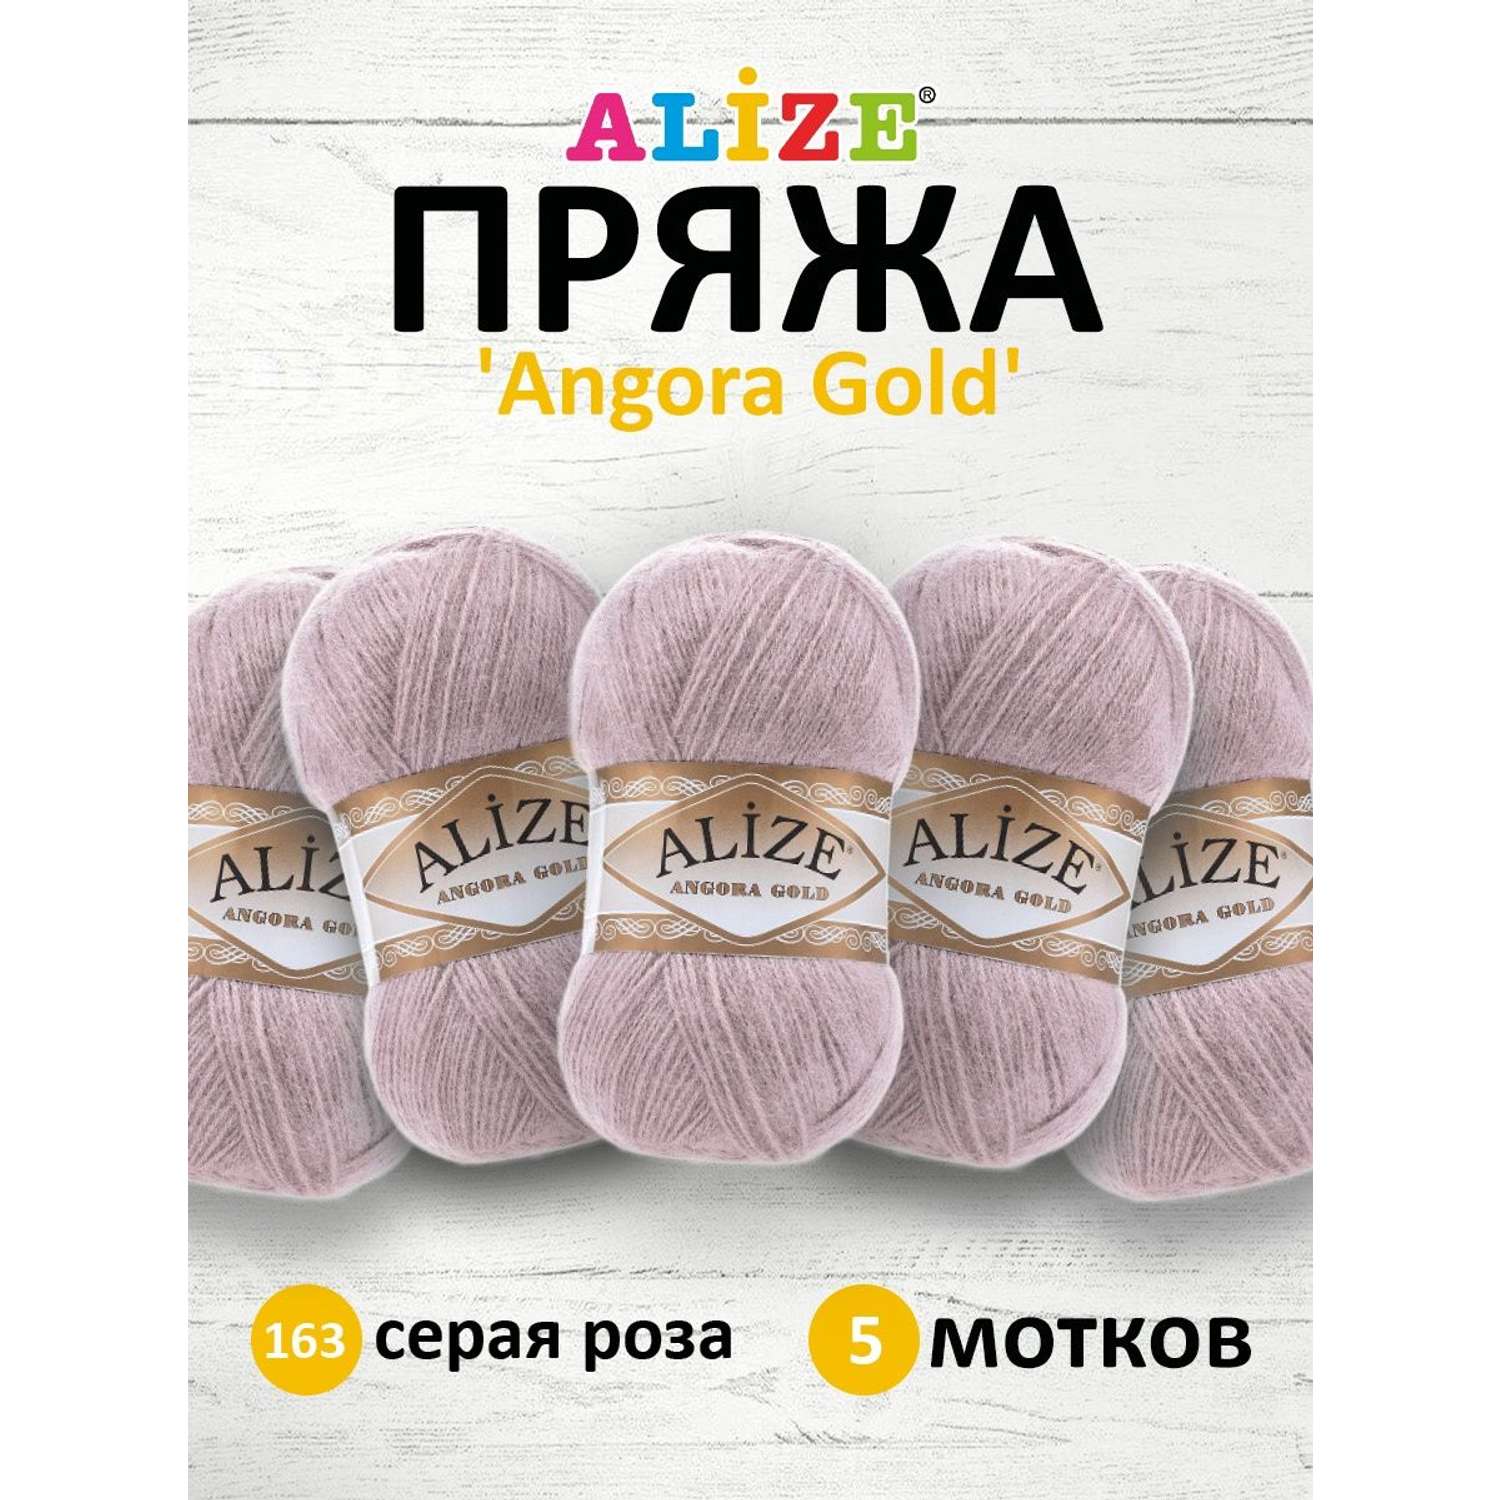 Пряжа Alize мягкая теплая для шарфов кардиганов Angora Gold 100 гр 550 м 5 мотков 163 серая роза - фото 1